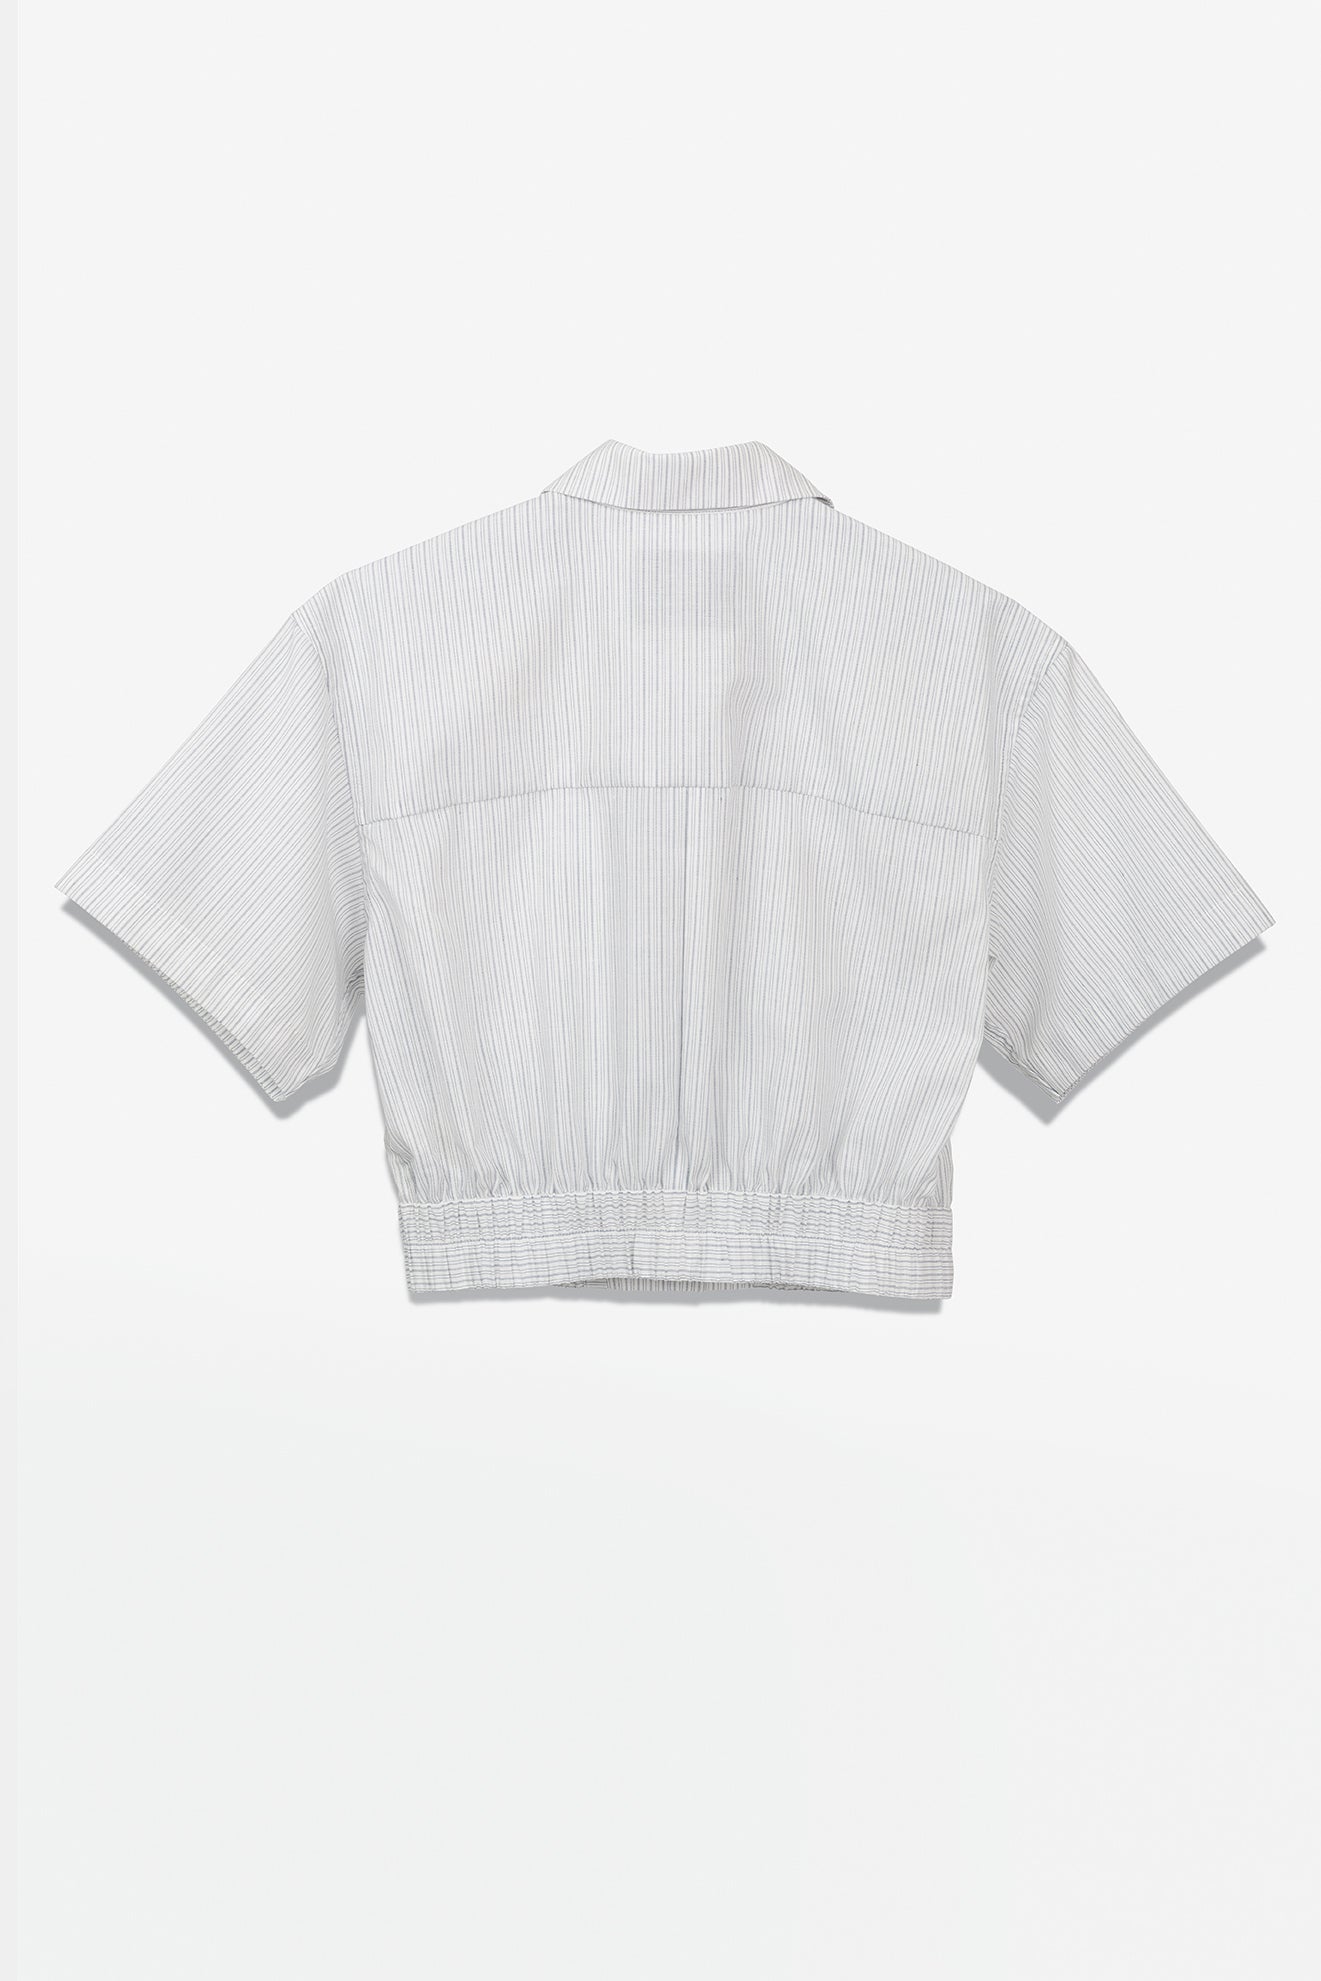 SEANNUNG - WOMEN -  Striped Pattern Short Shirt 條紋短袖外套式襯衫